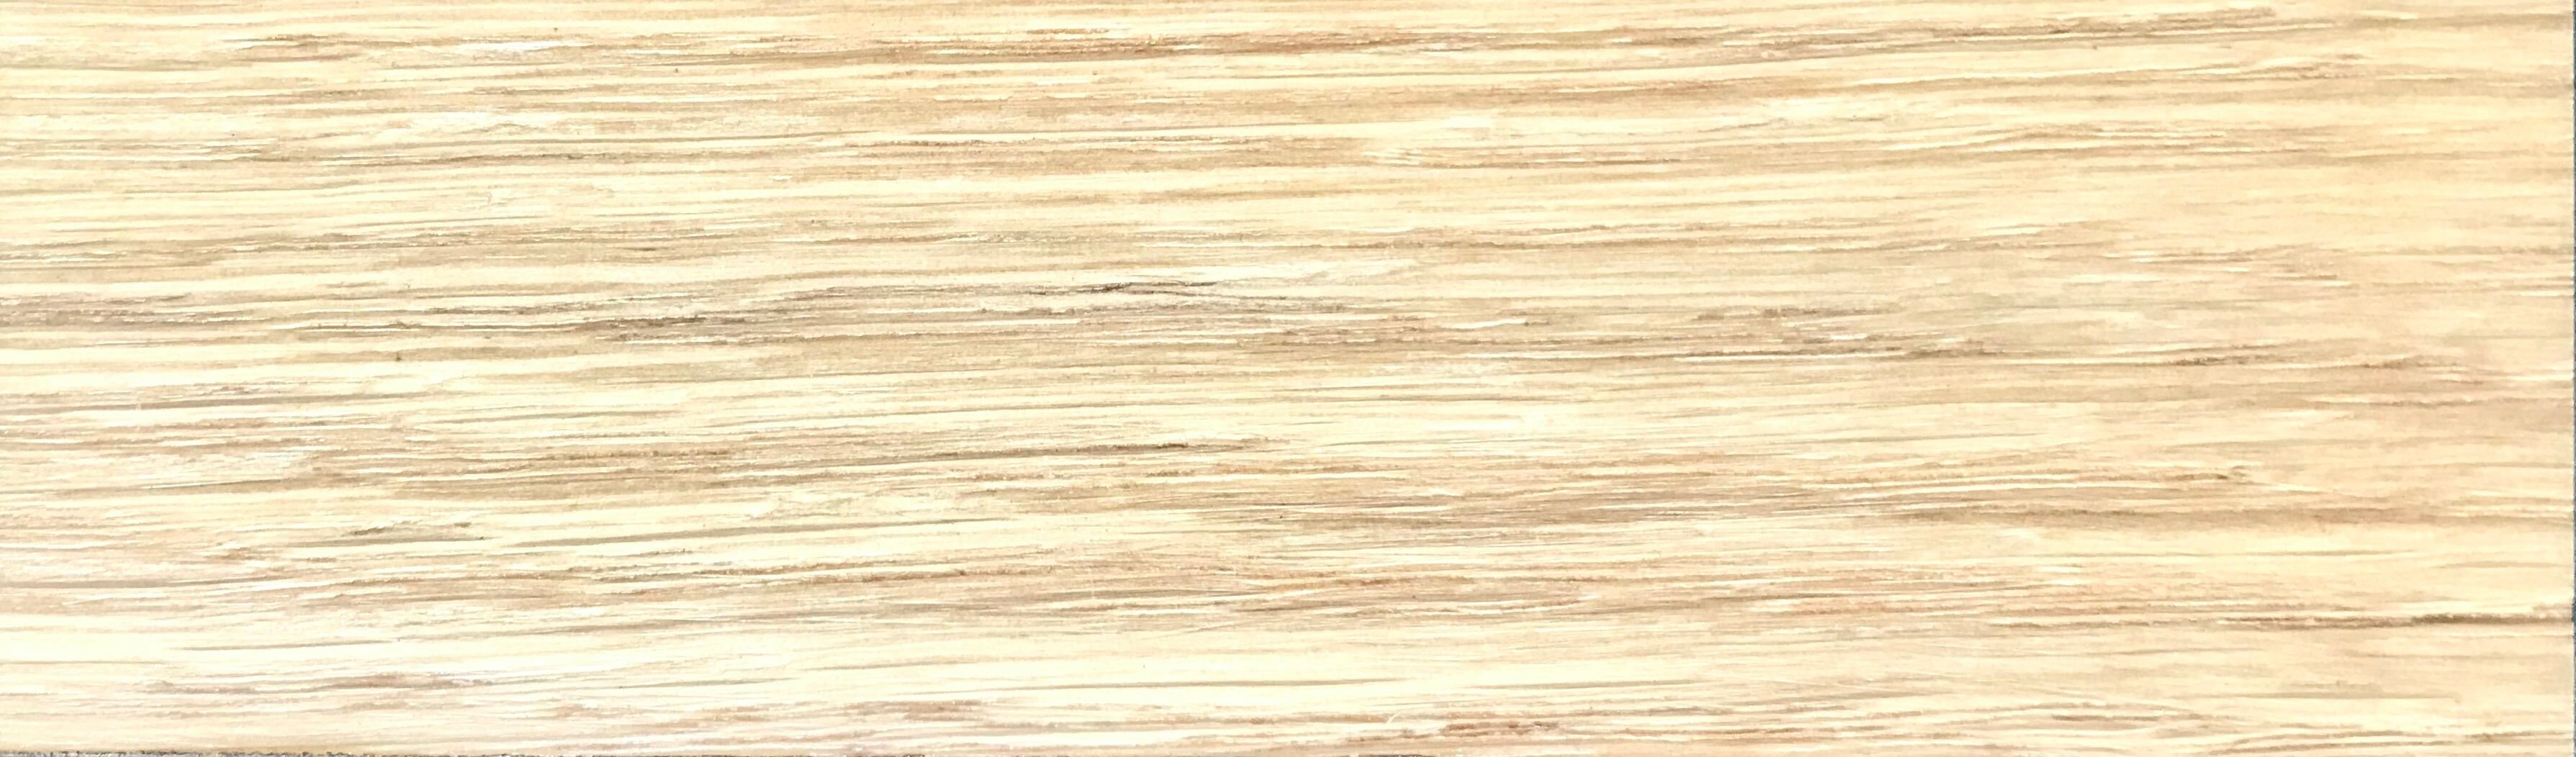 Масло для дерева Vita Olio с твердым воском для деревянных полов и мебели, шелковисто-матовое Натуральный 2.5 л - фотография № 3